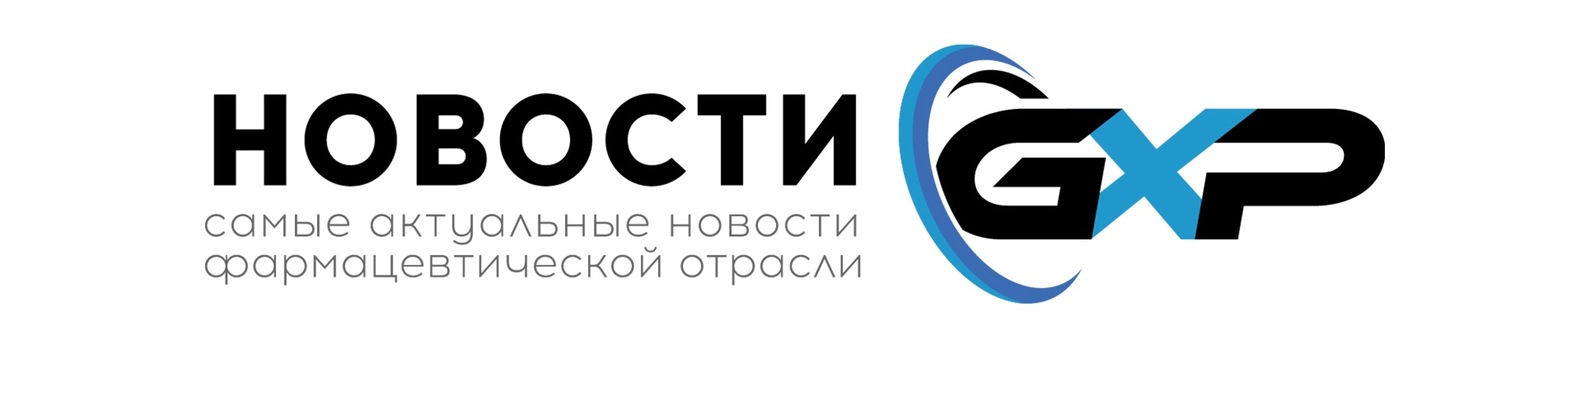 Эксперты составили резолюцию по развитию офтальмологической службы в России